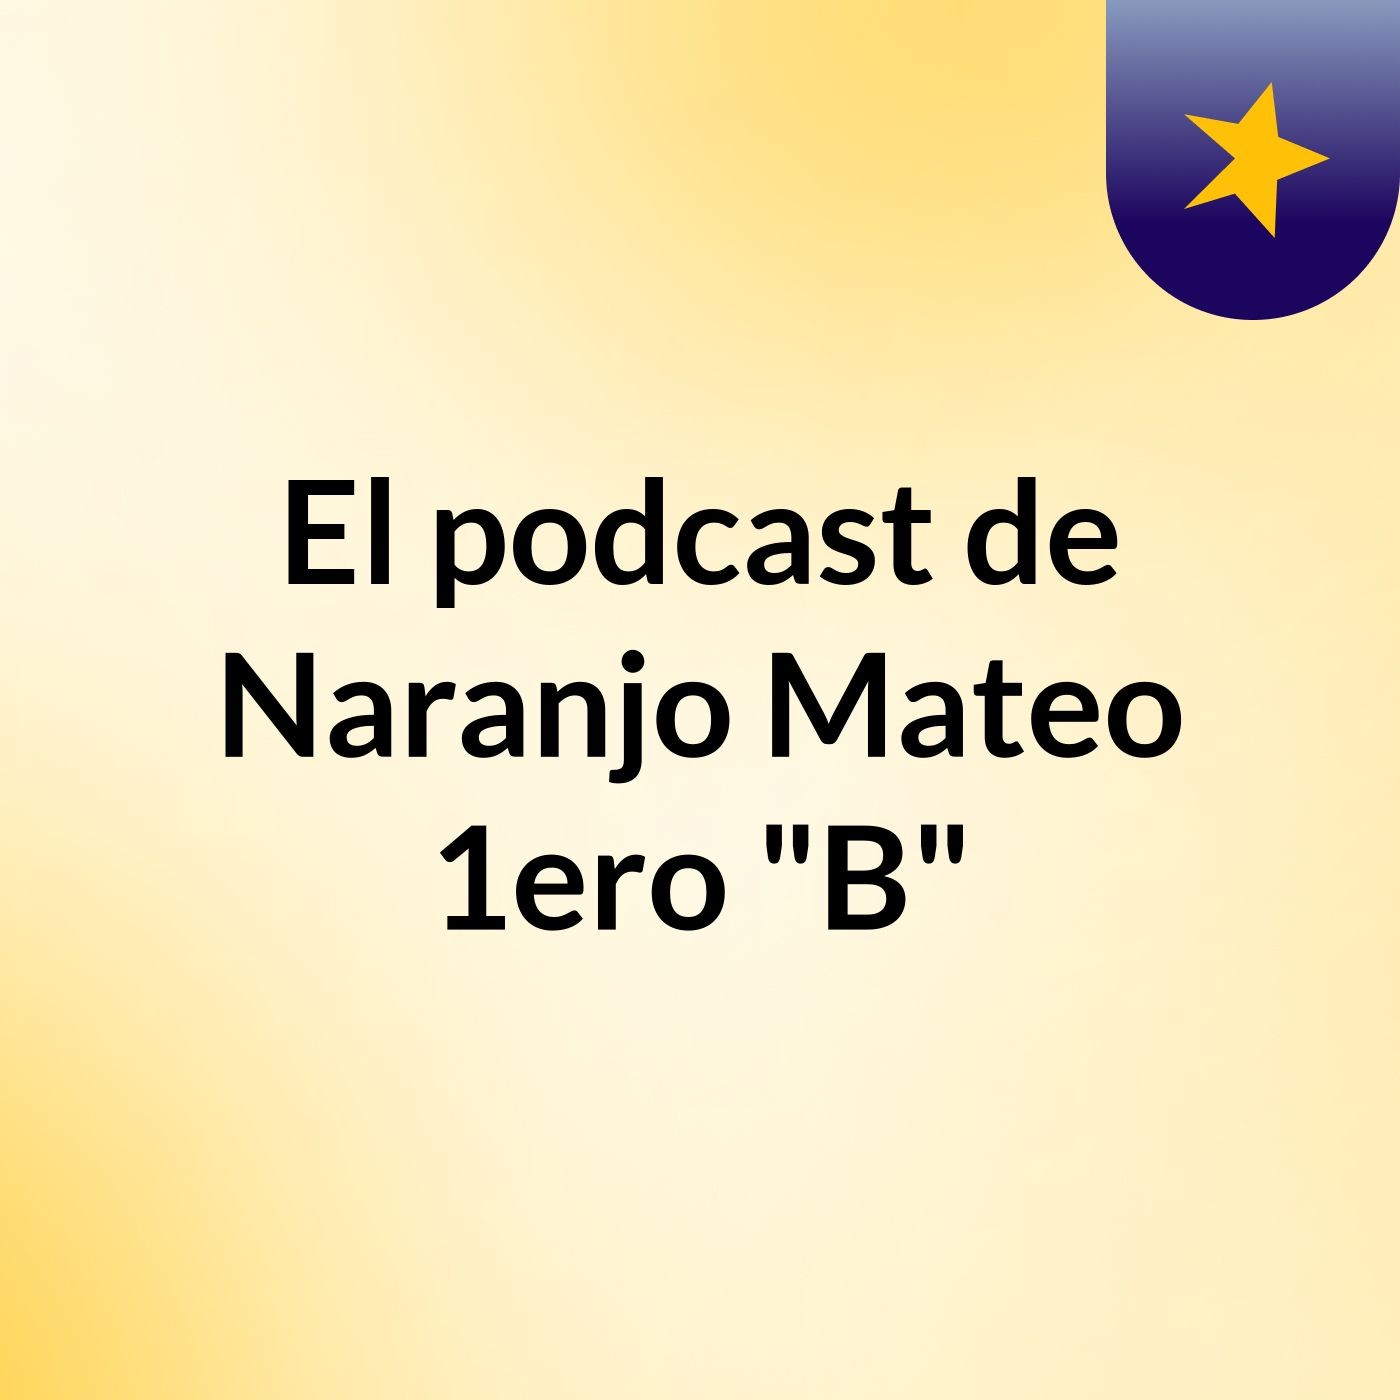 El podcast de Naranjo Mateo 1ero "B"